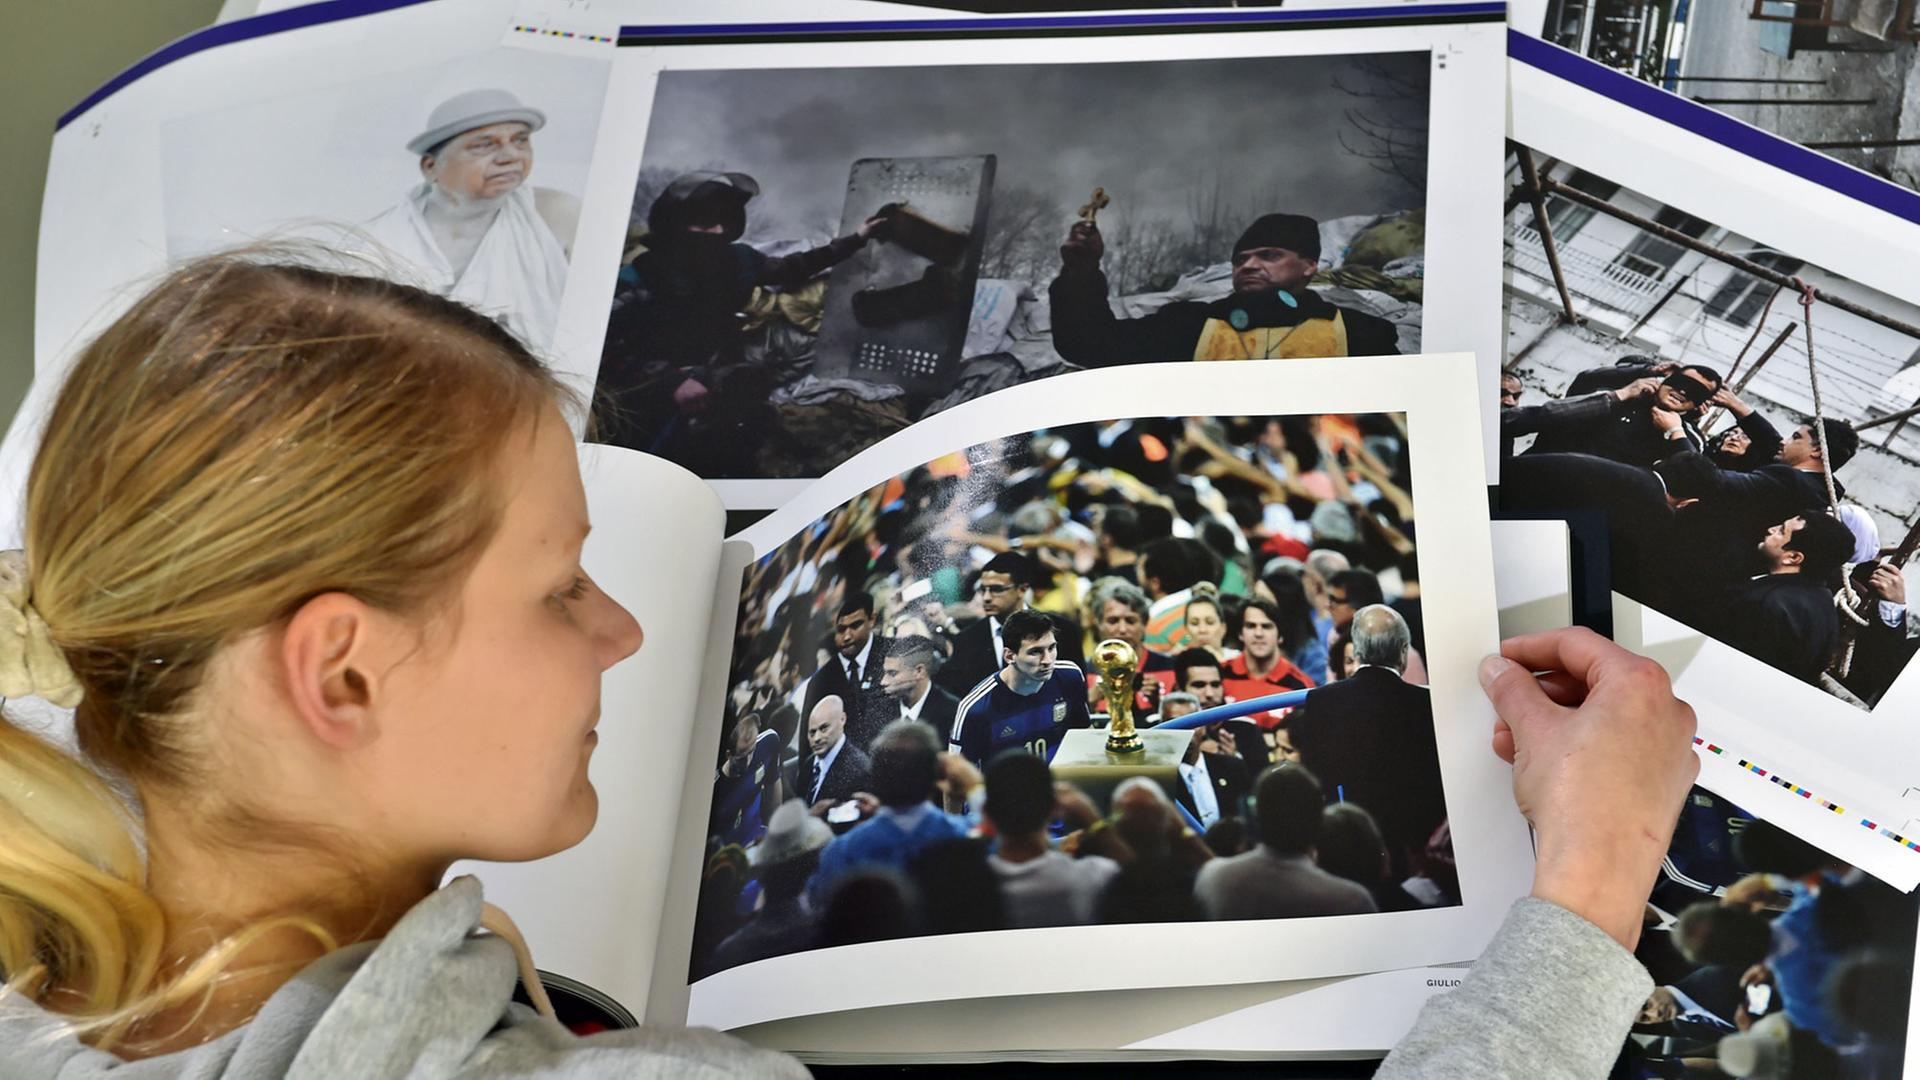 Im Printlabor der Technischen Universität in Chemnitz blättert eine Studentin am 28.04.2015 in einem Buch mit integrierten Lautsprechern. Das sogenannte T-book (Ton-Buch) zeigt die Bilder des World Press Photo Awards und bringt diese zum Klingen.